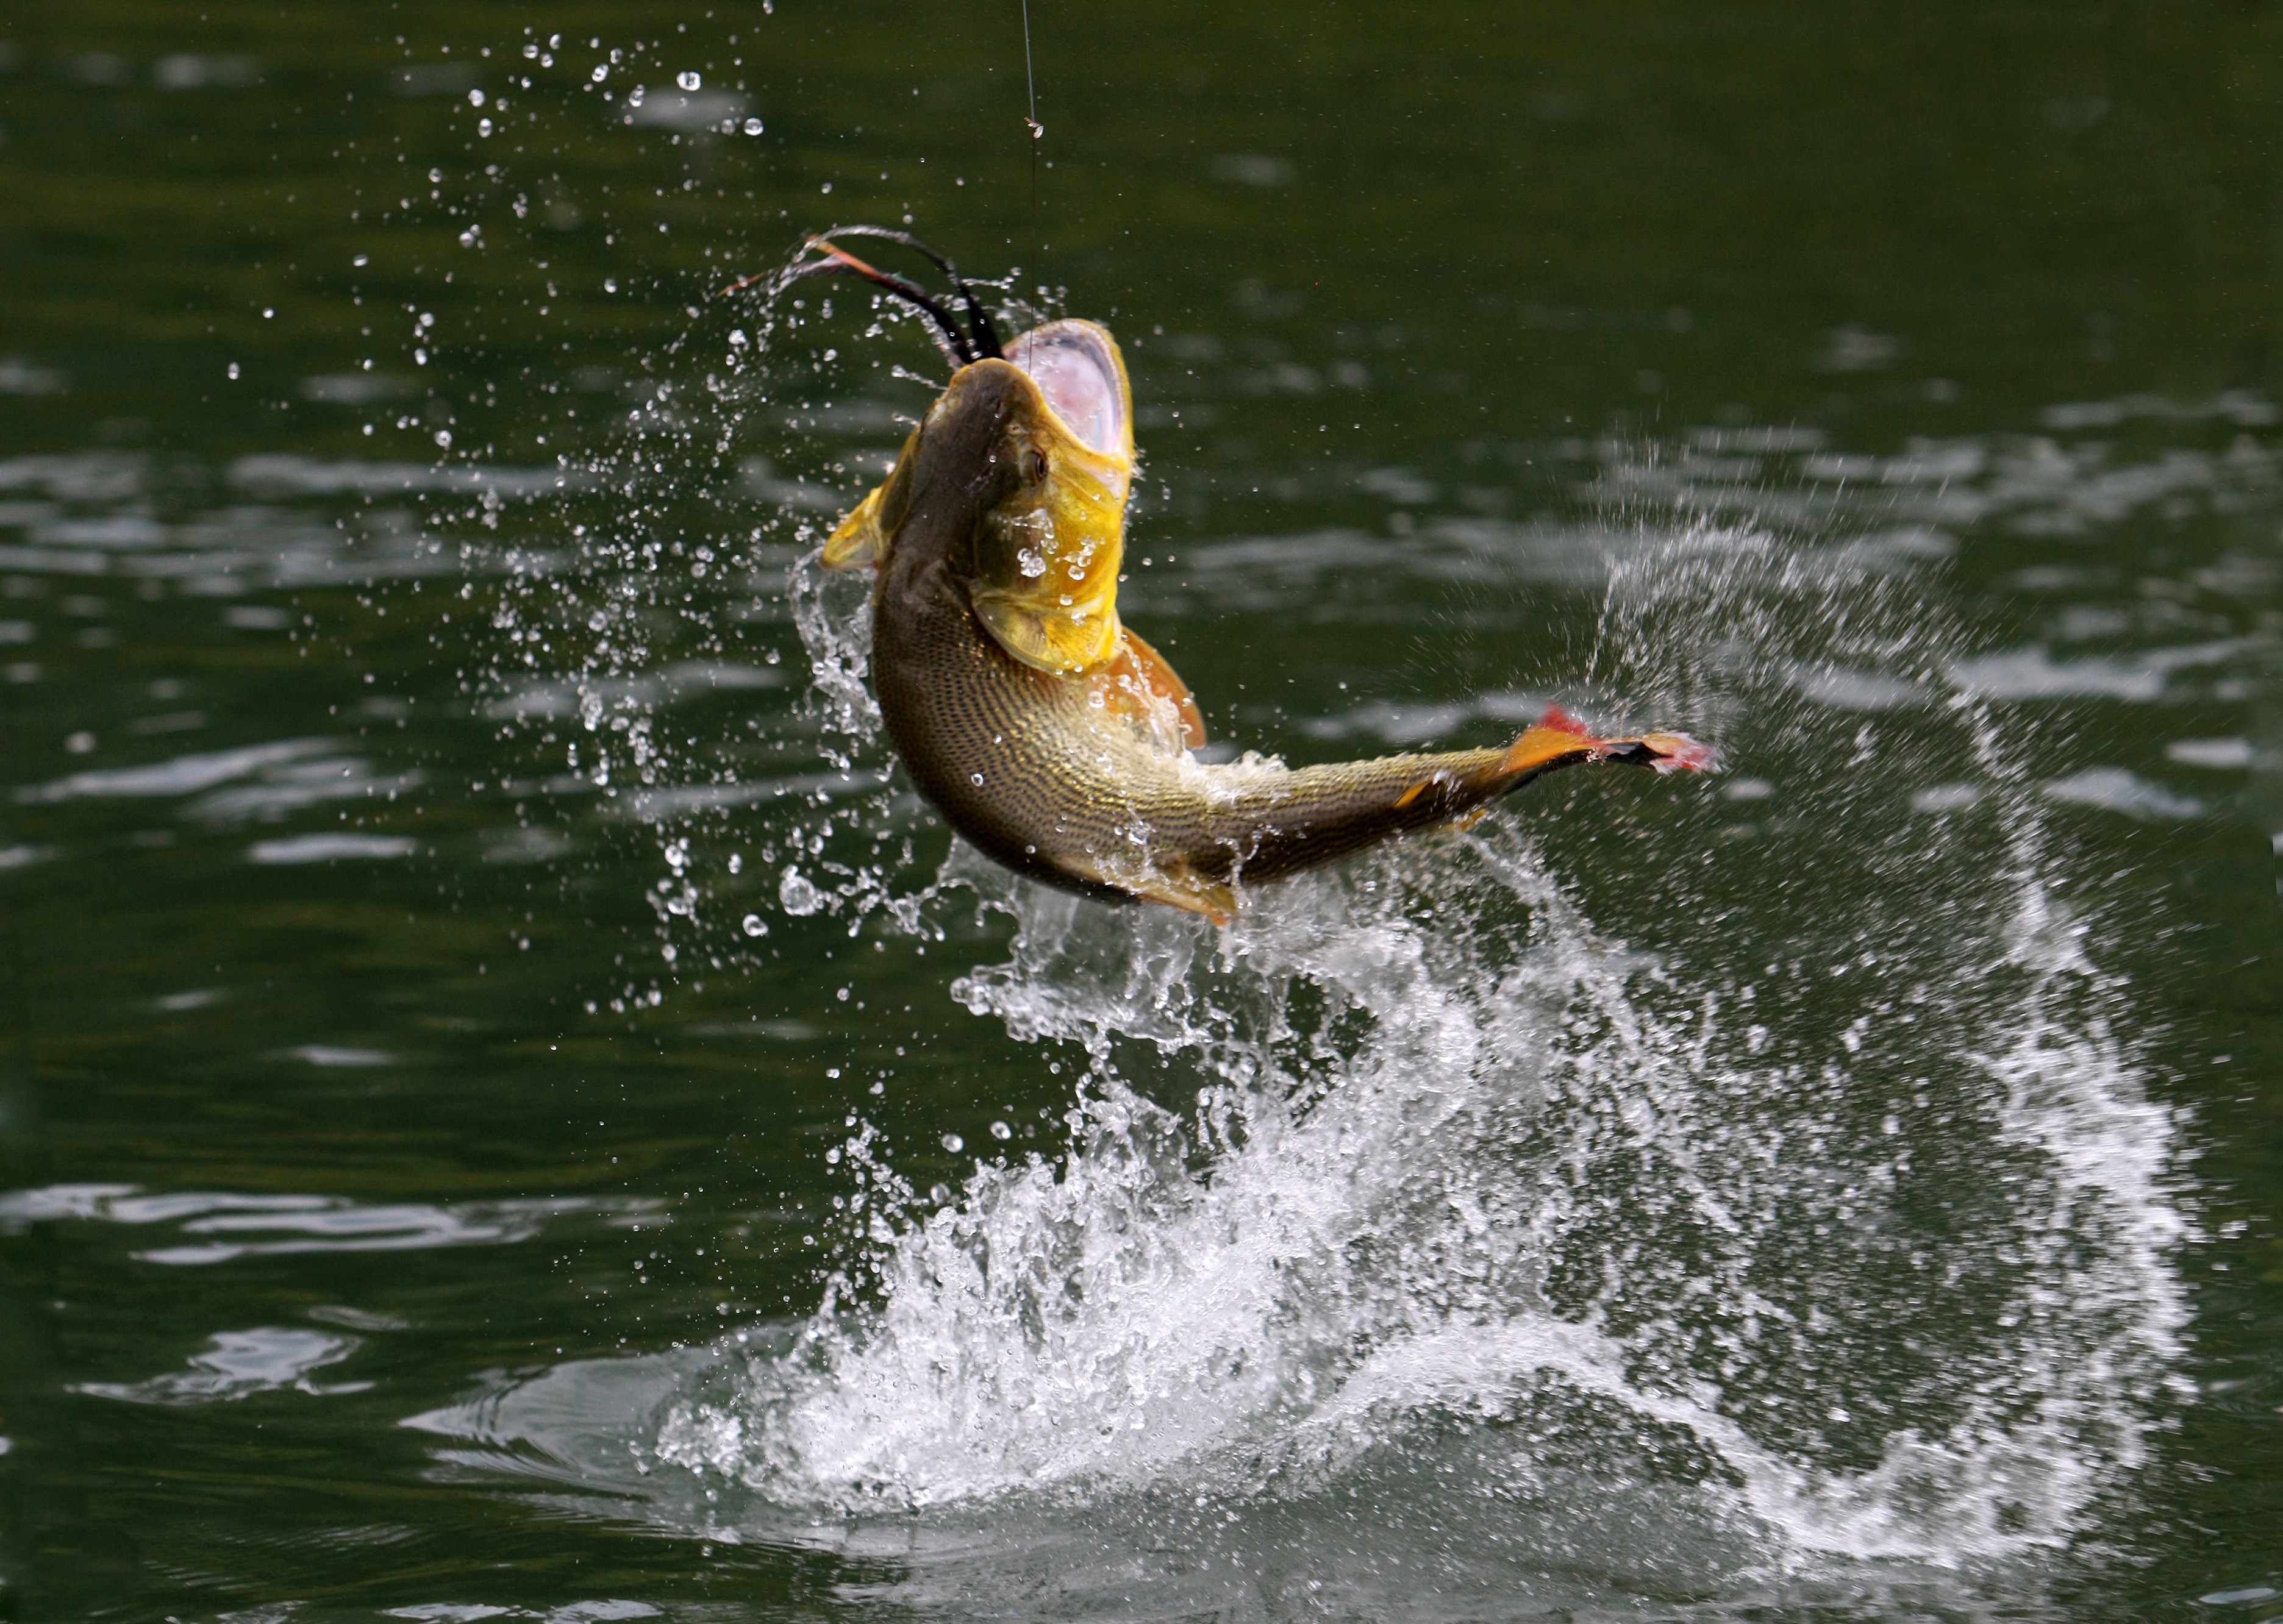 bass fish jumping